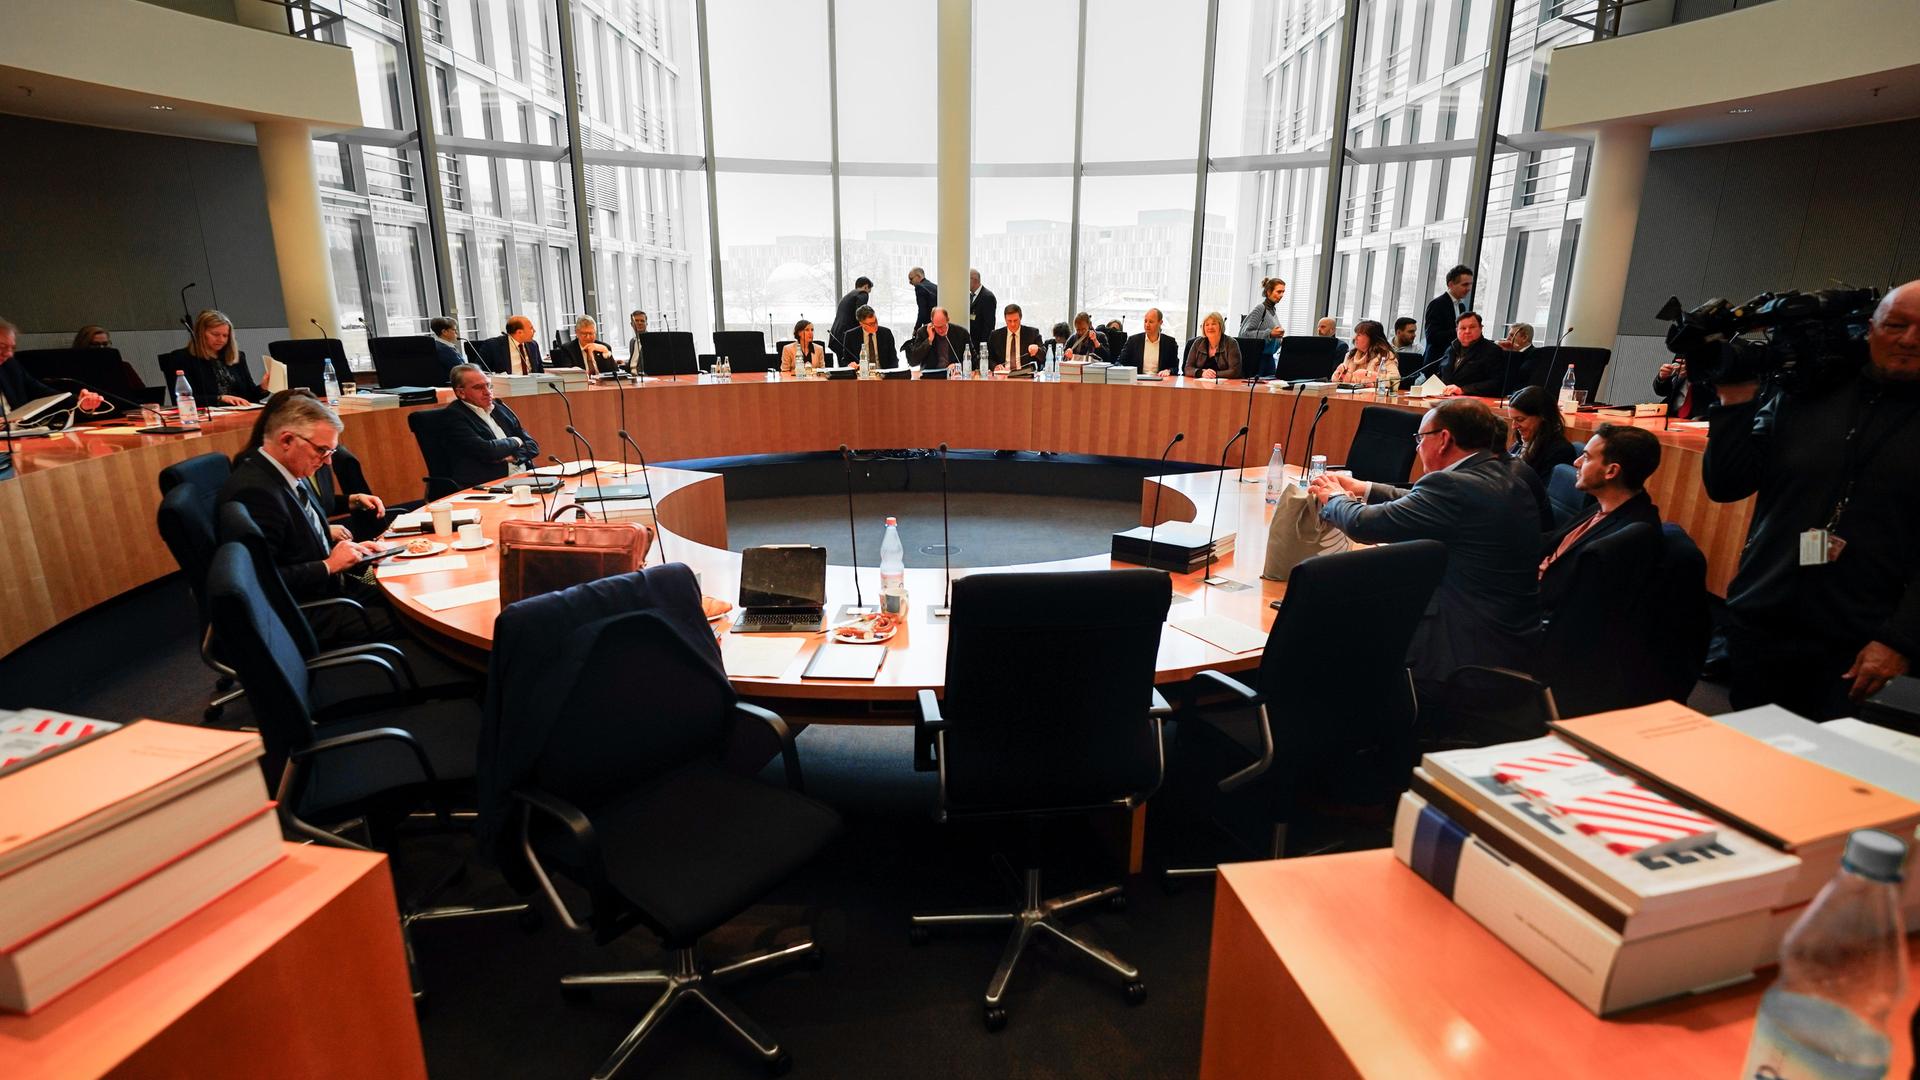 Mitglieder des Haushaltsausschuss sitzen an runden Tischen.